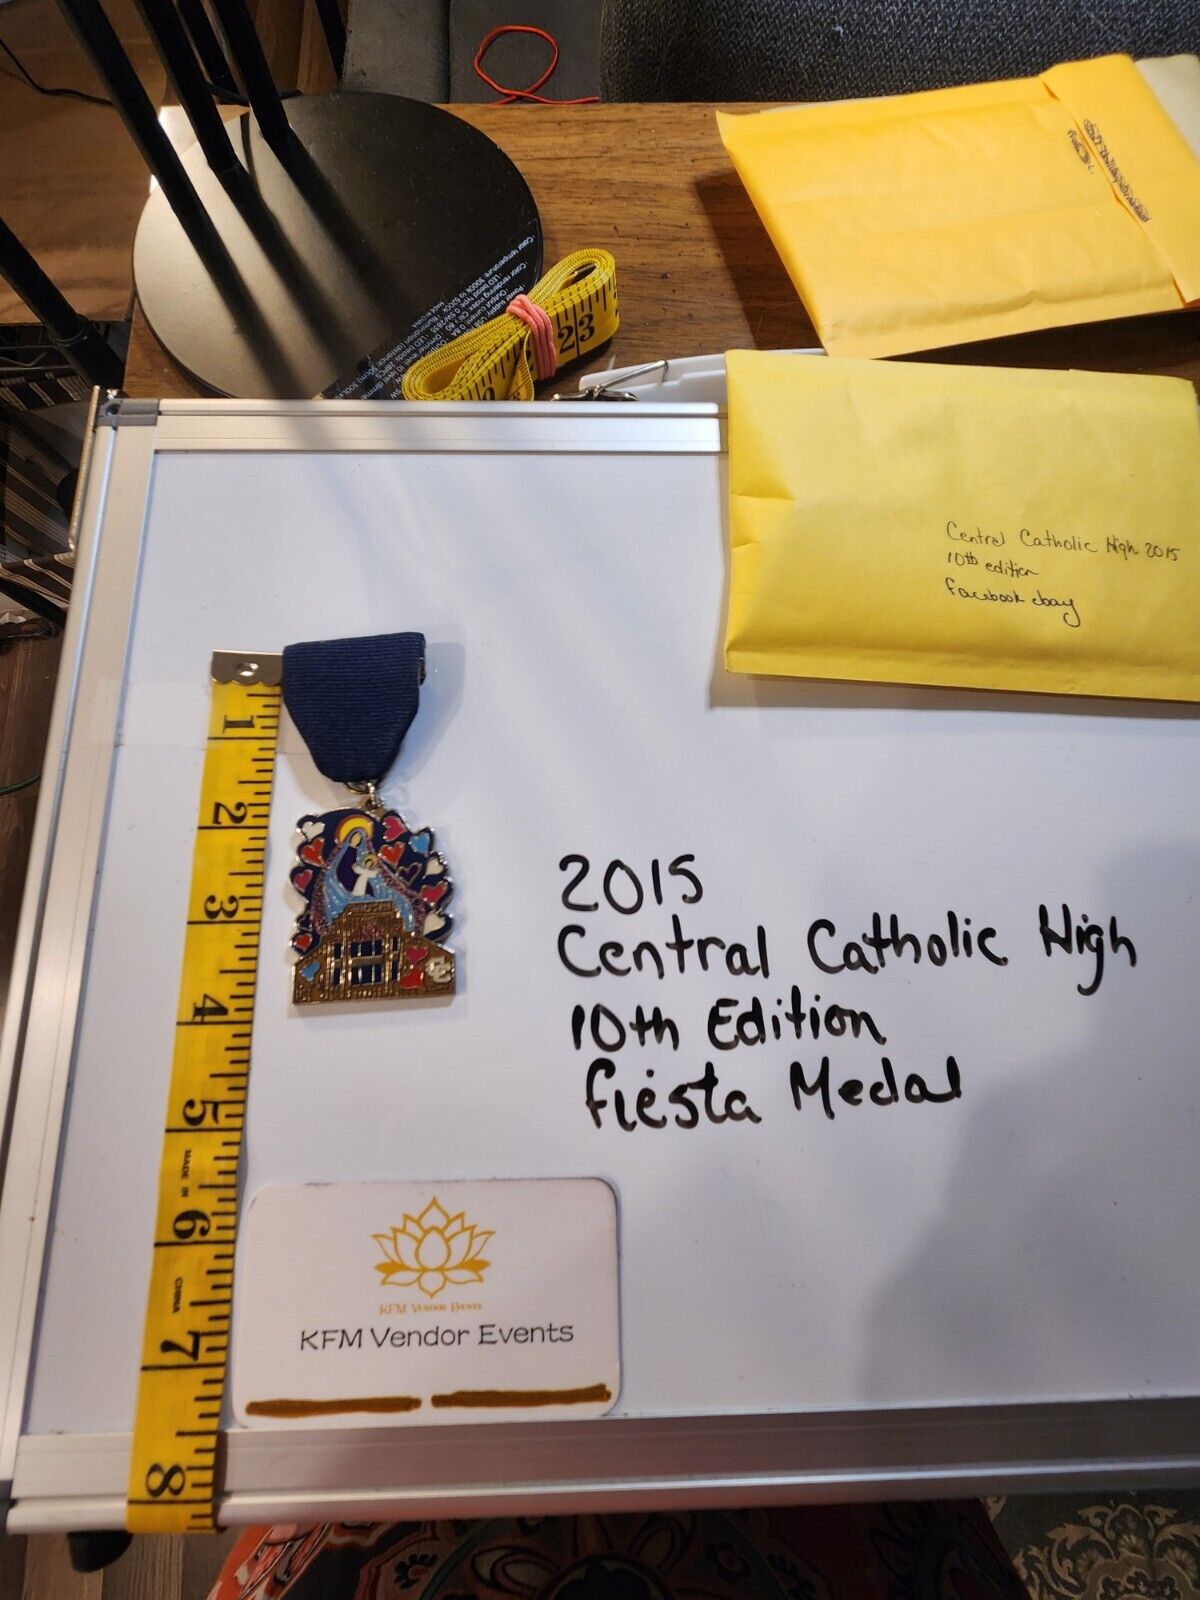 2015 Central Catholic High School 10th Edition Fiesta Medal